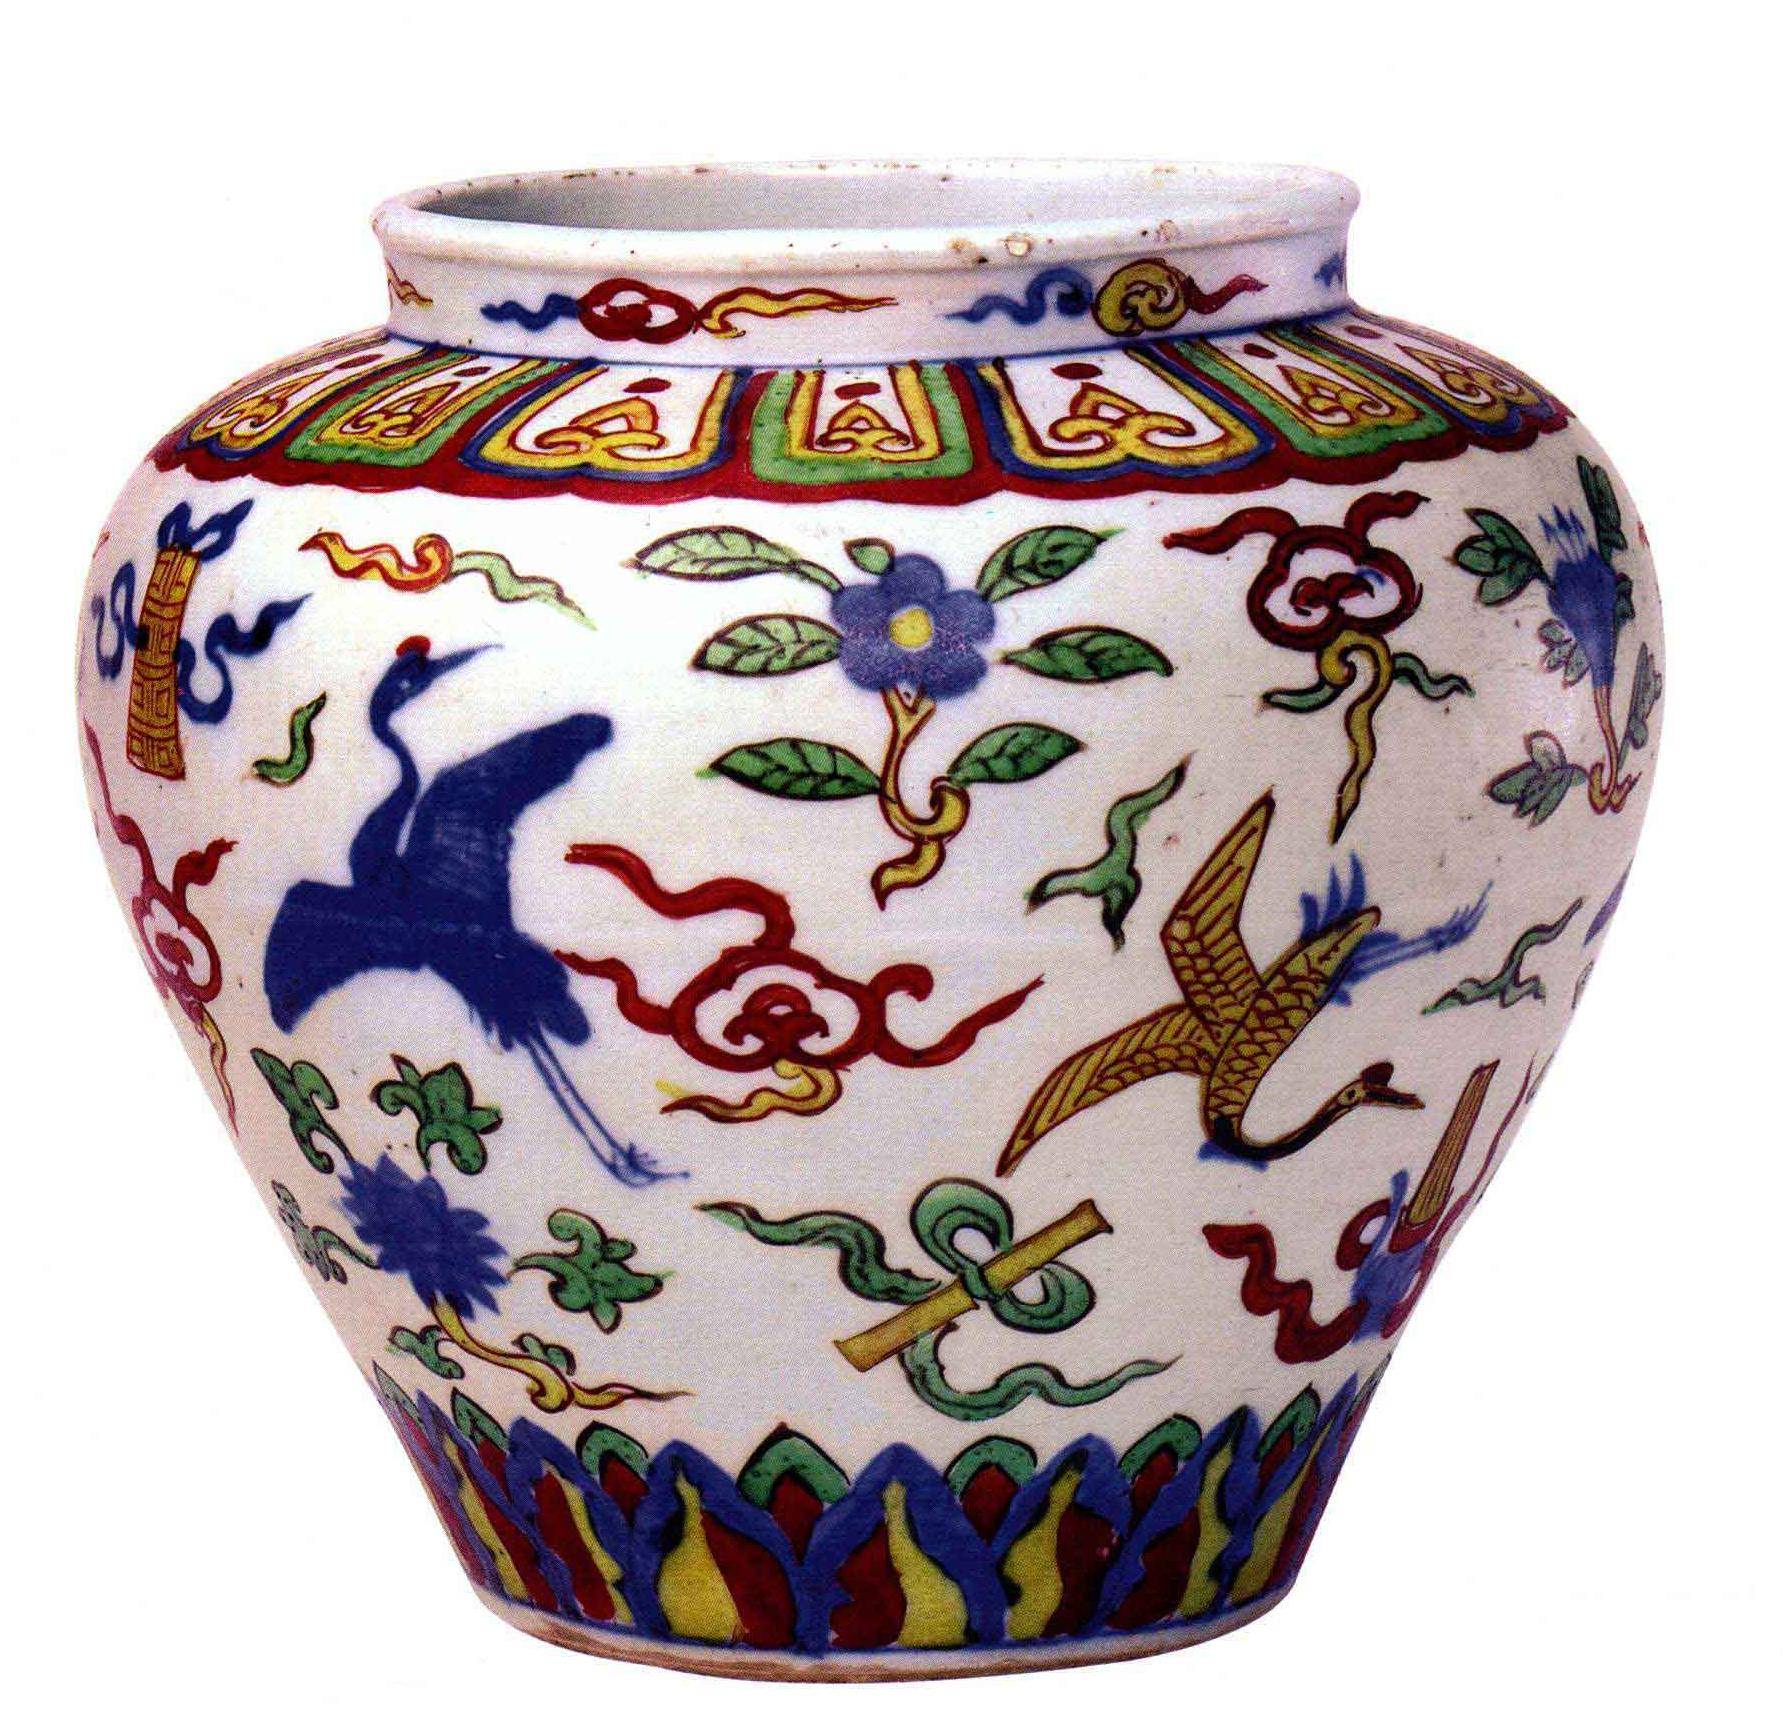 原创中国陶瓷文化,明嘉靖御窑青花五彩瓷器中的名品和传世孤品蒜头瓶